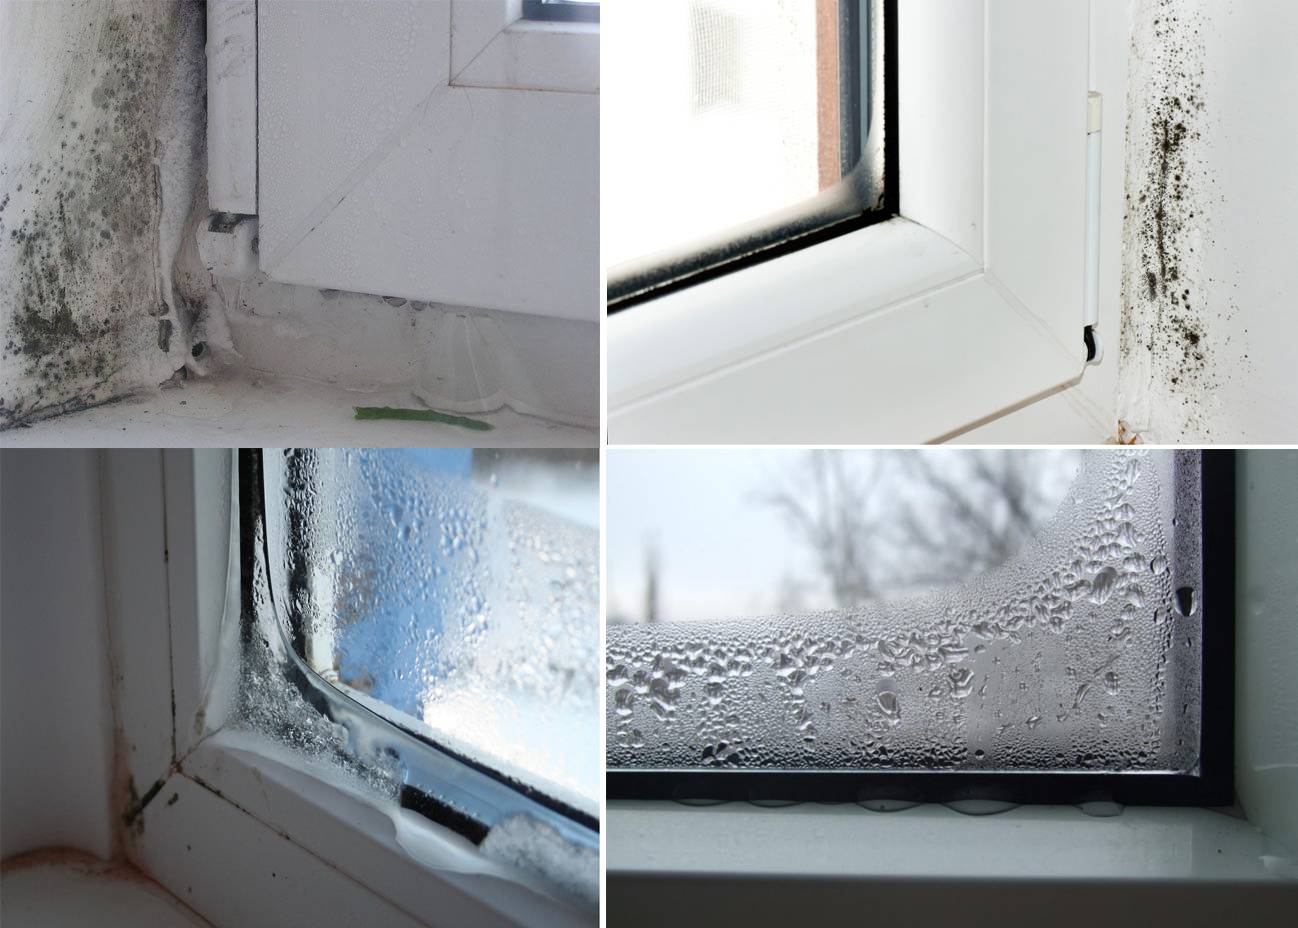 Что делать если потеют окна в доме? причины, способы решения